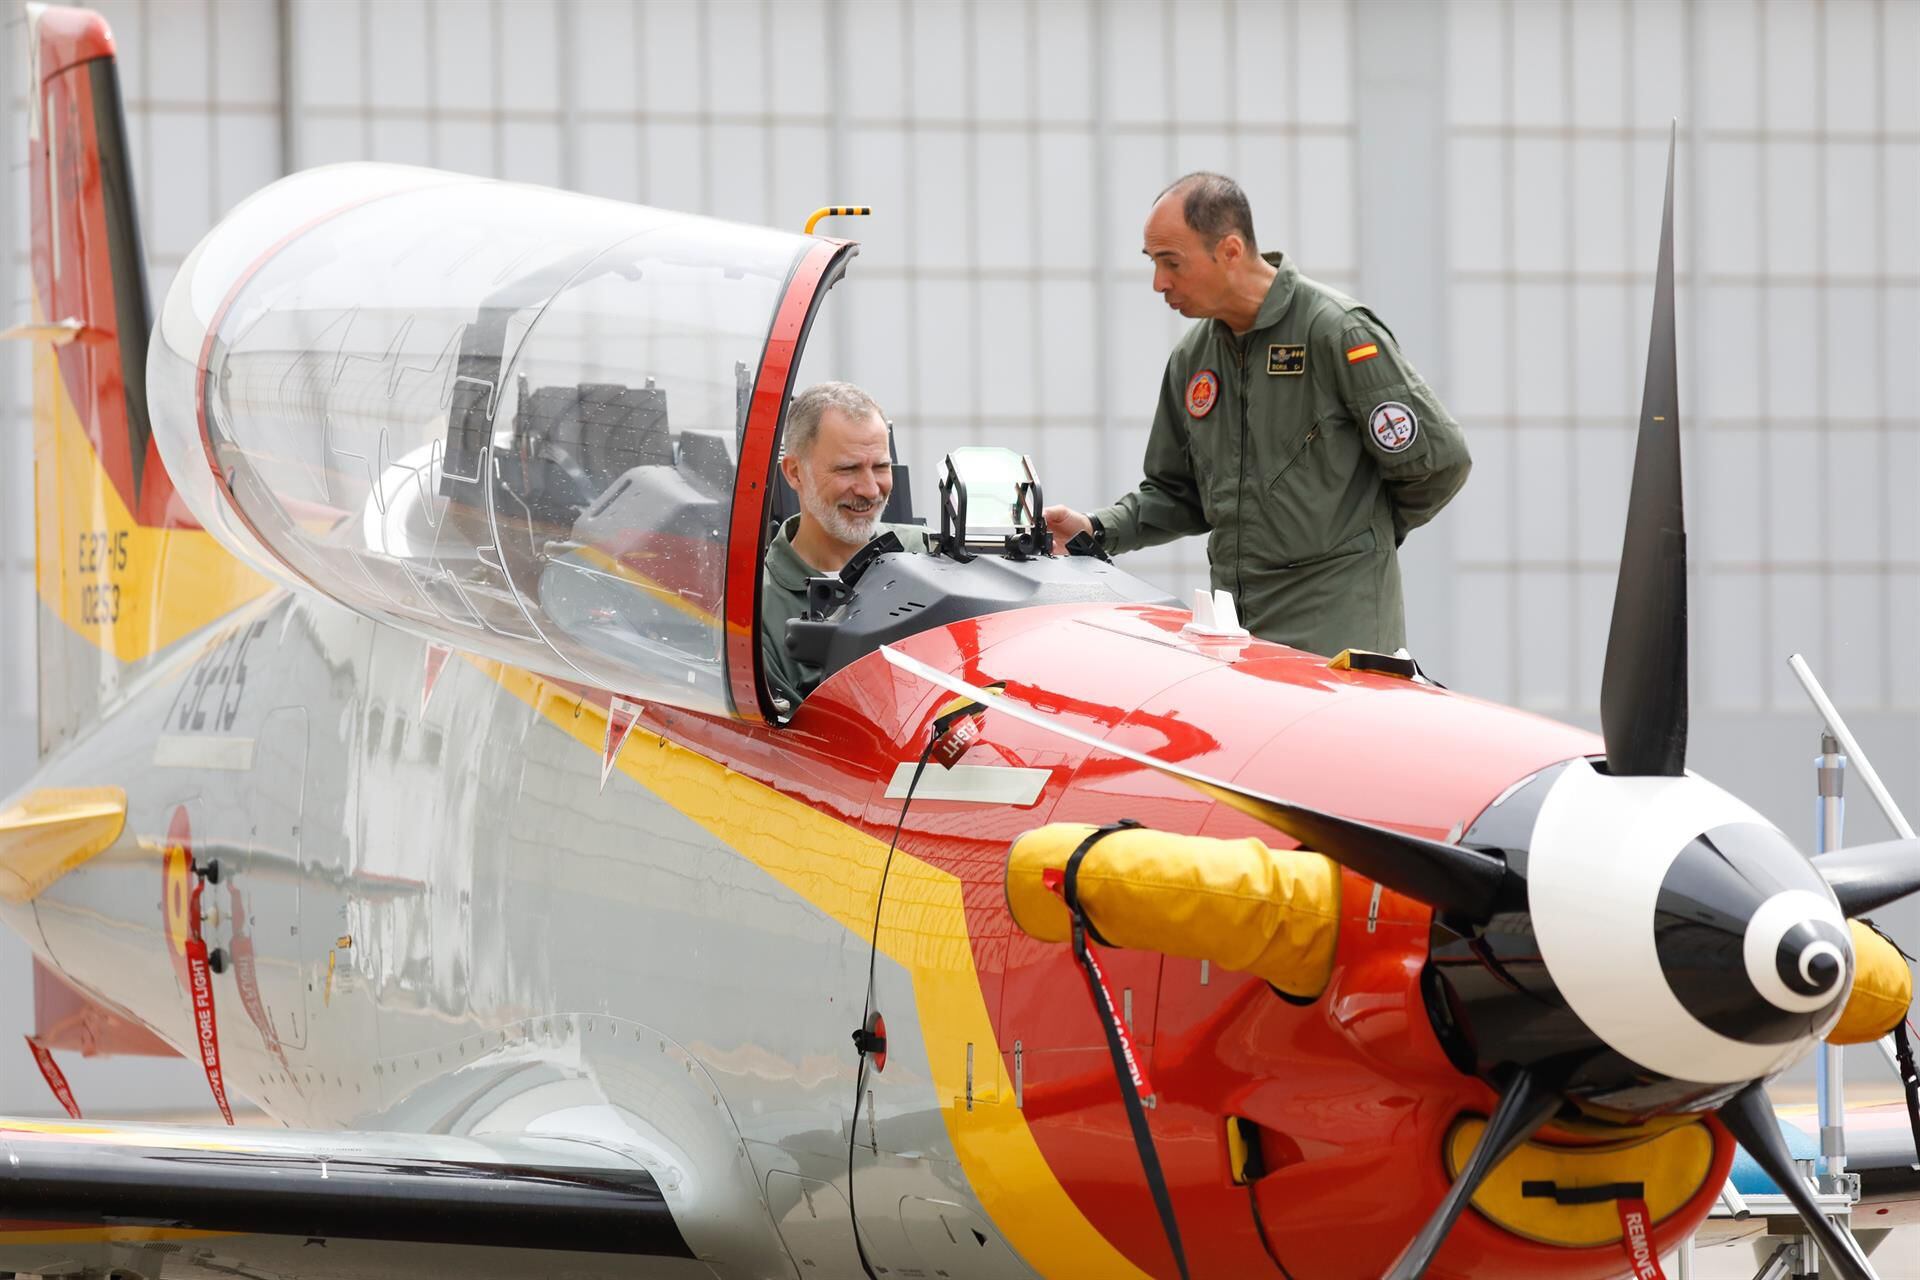 VÍDEO: El Rey Felipe VI realiza un vuelo simulado y se sube a bordo de una aeronave 'Pilatus' durante su visita a la AGA